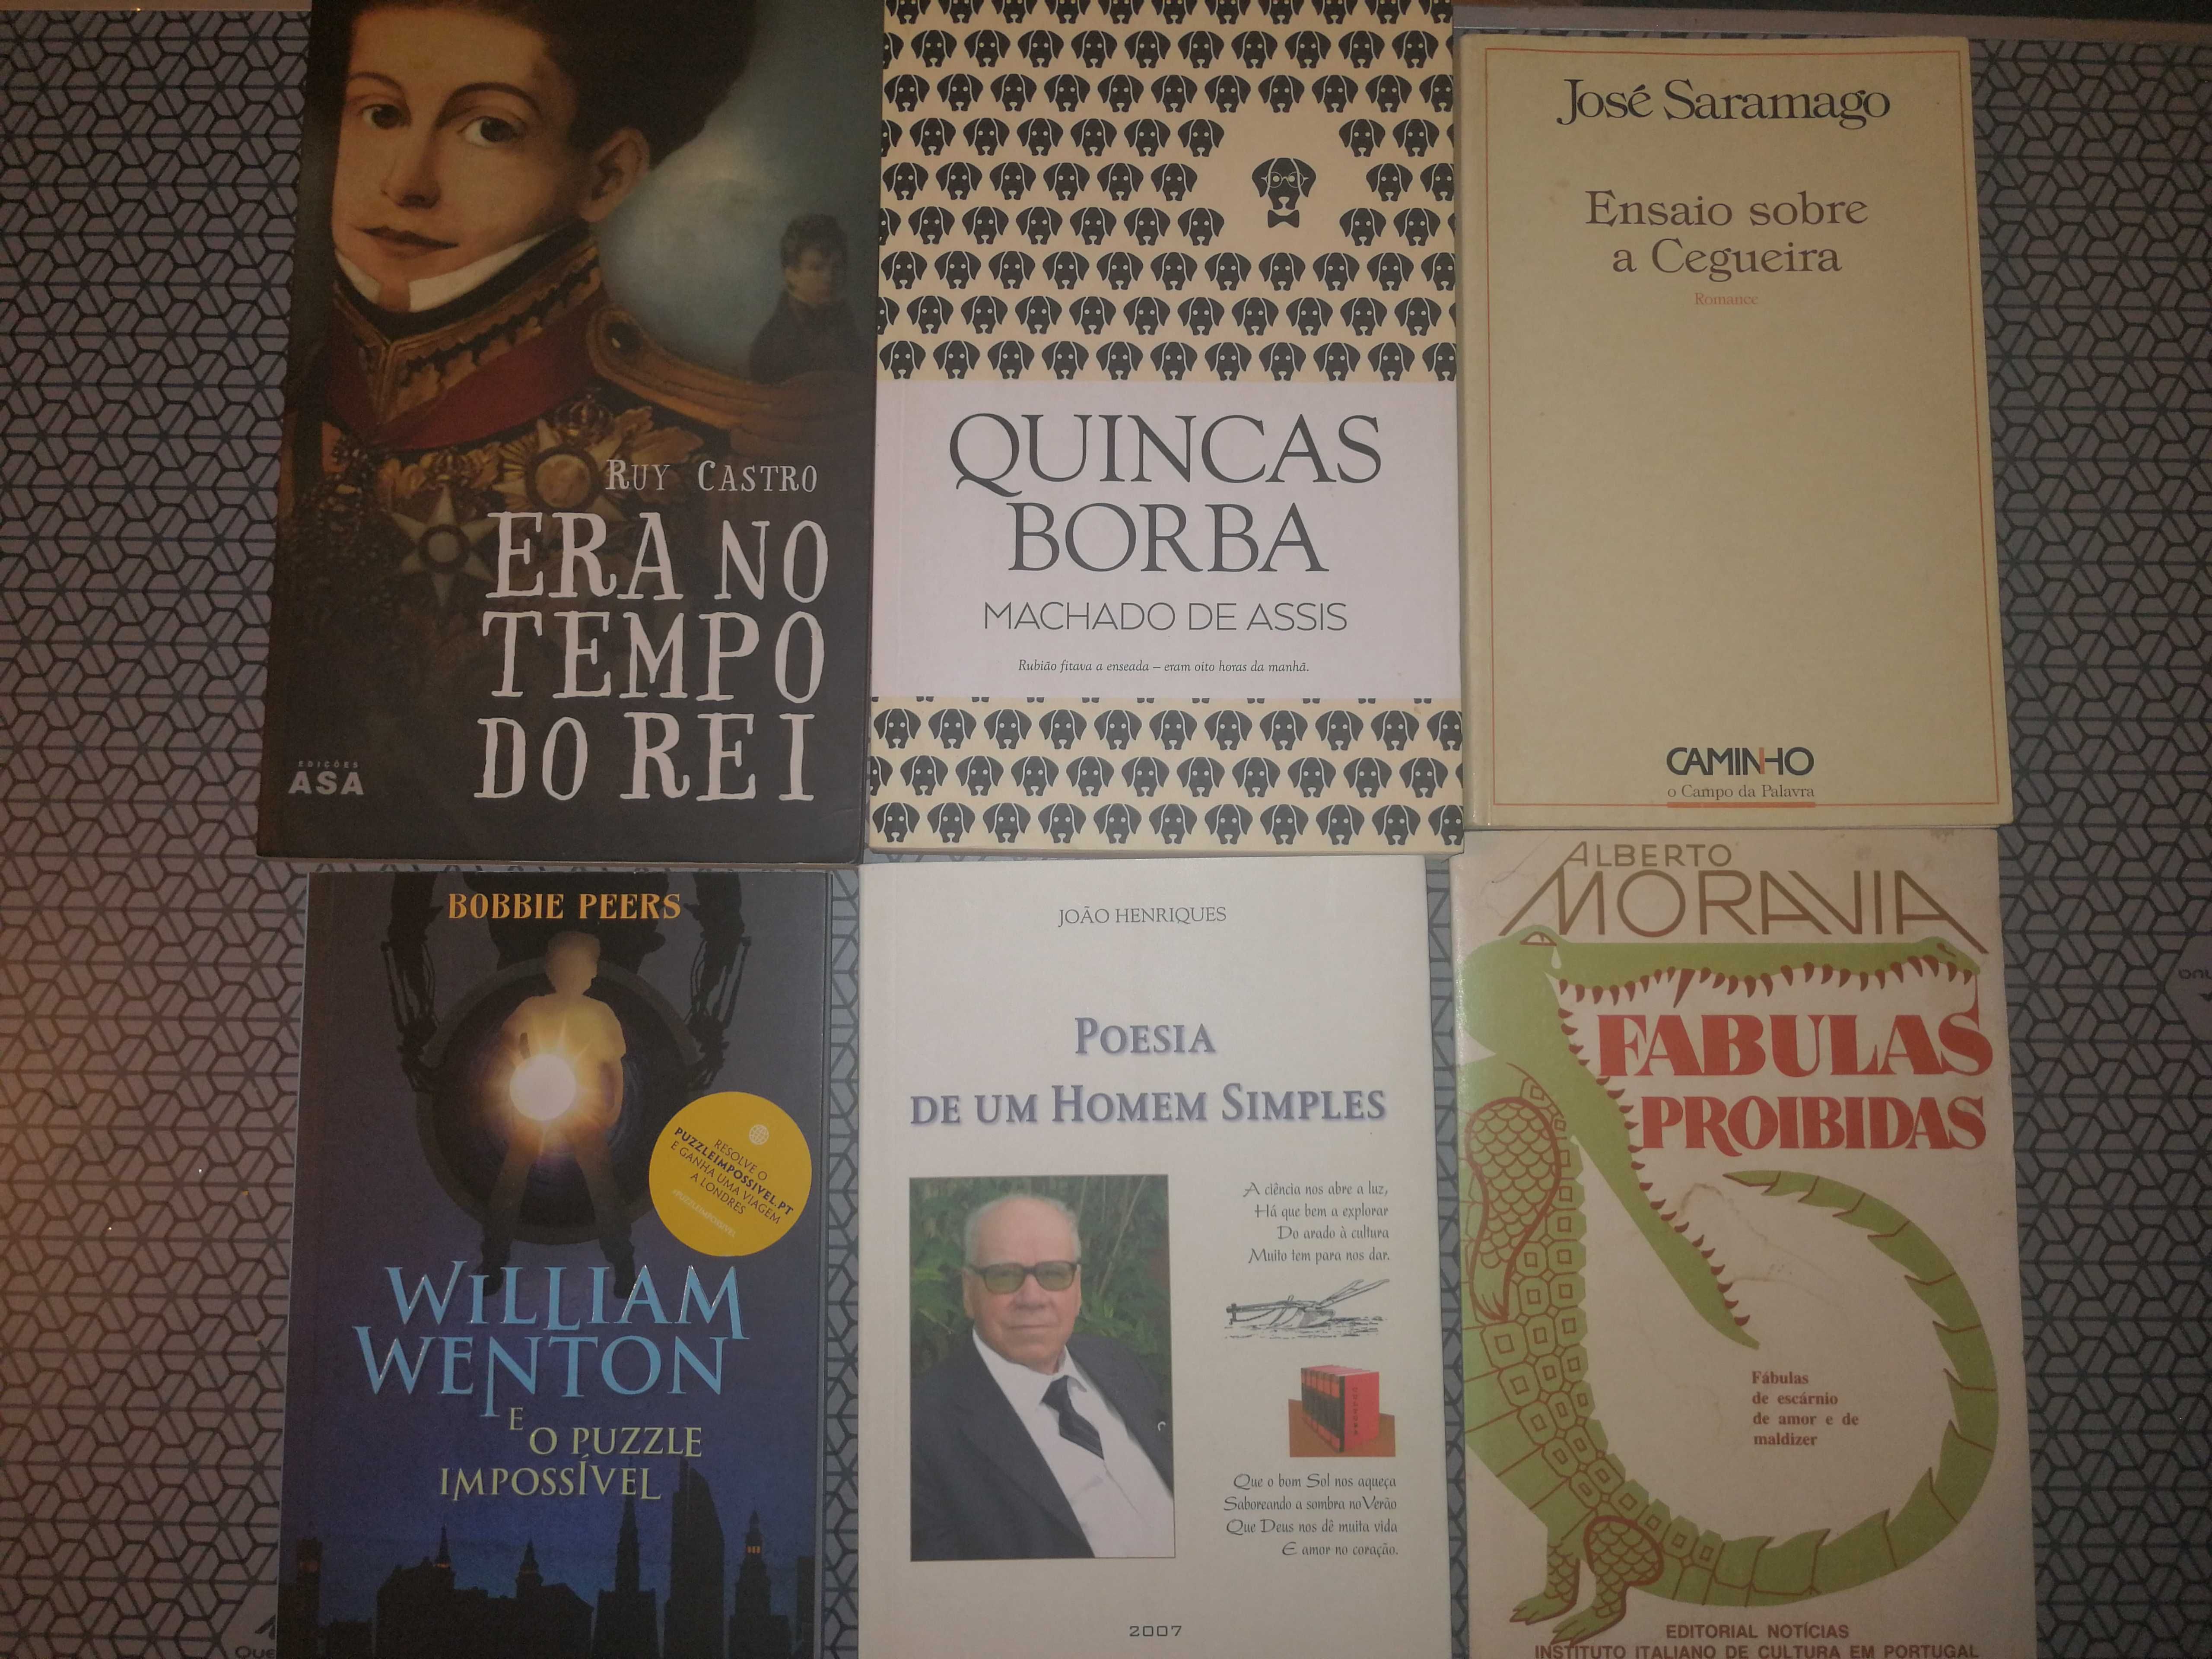 Livros Literatura Contemporânea e Raridades - Novas Entradas.